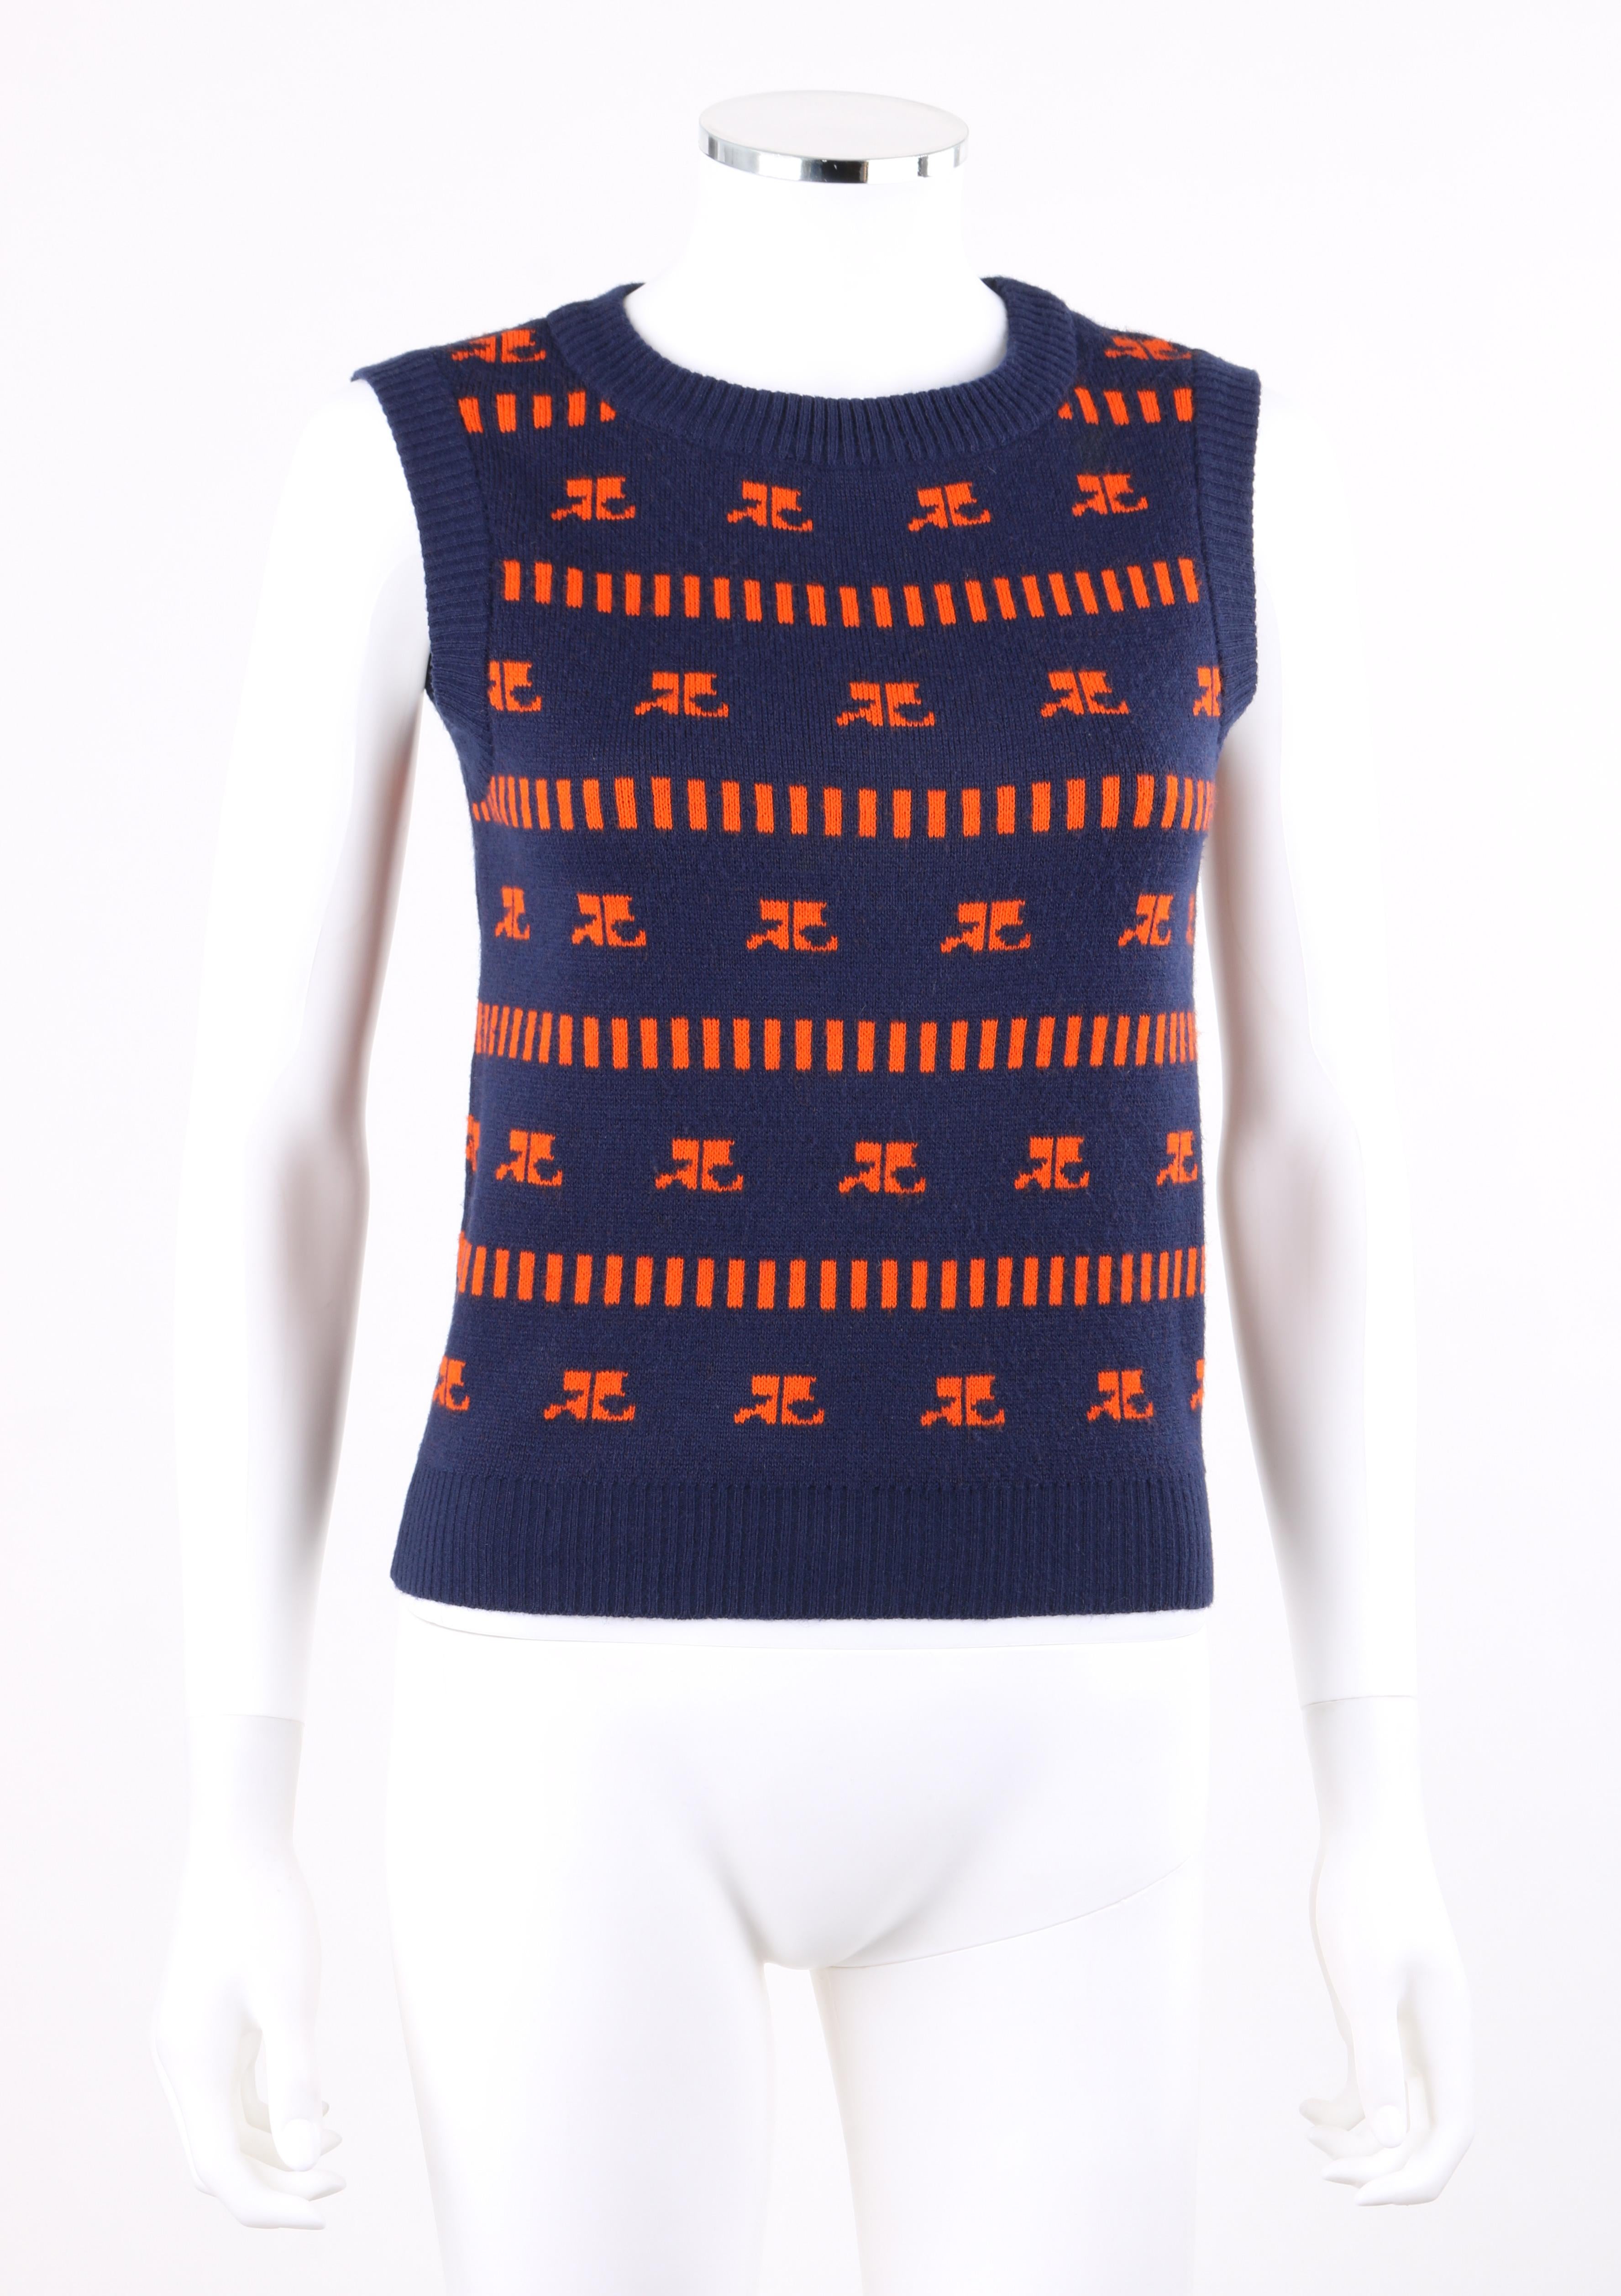 COURREGES c.1970s Navy & Orange Logo Signature Pattern Knit Sweater Vest
 
Circa: 1970’s
Label(s): Courrèges Paris
Designer: André Courrèges
Style: Sweater vest
Color(s): Shades of navy blue, orange (exterior, interior)
Lined: No
Marked Fabric